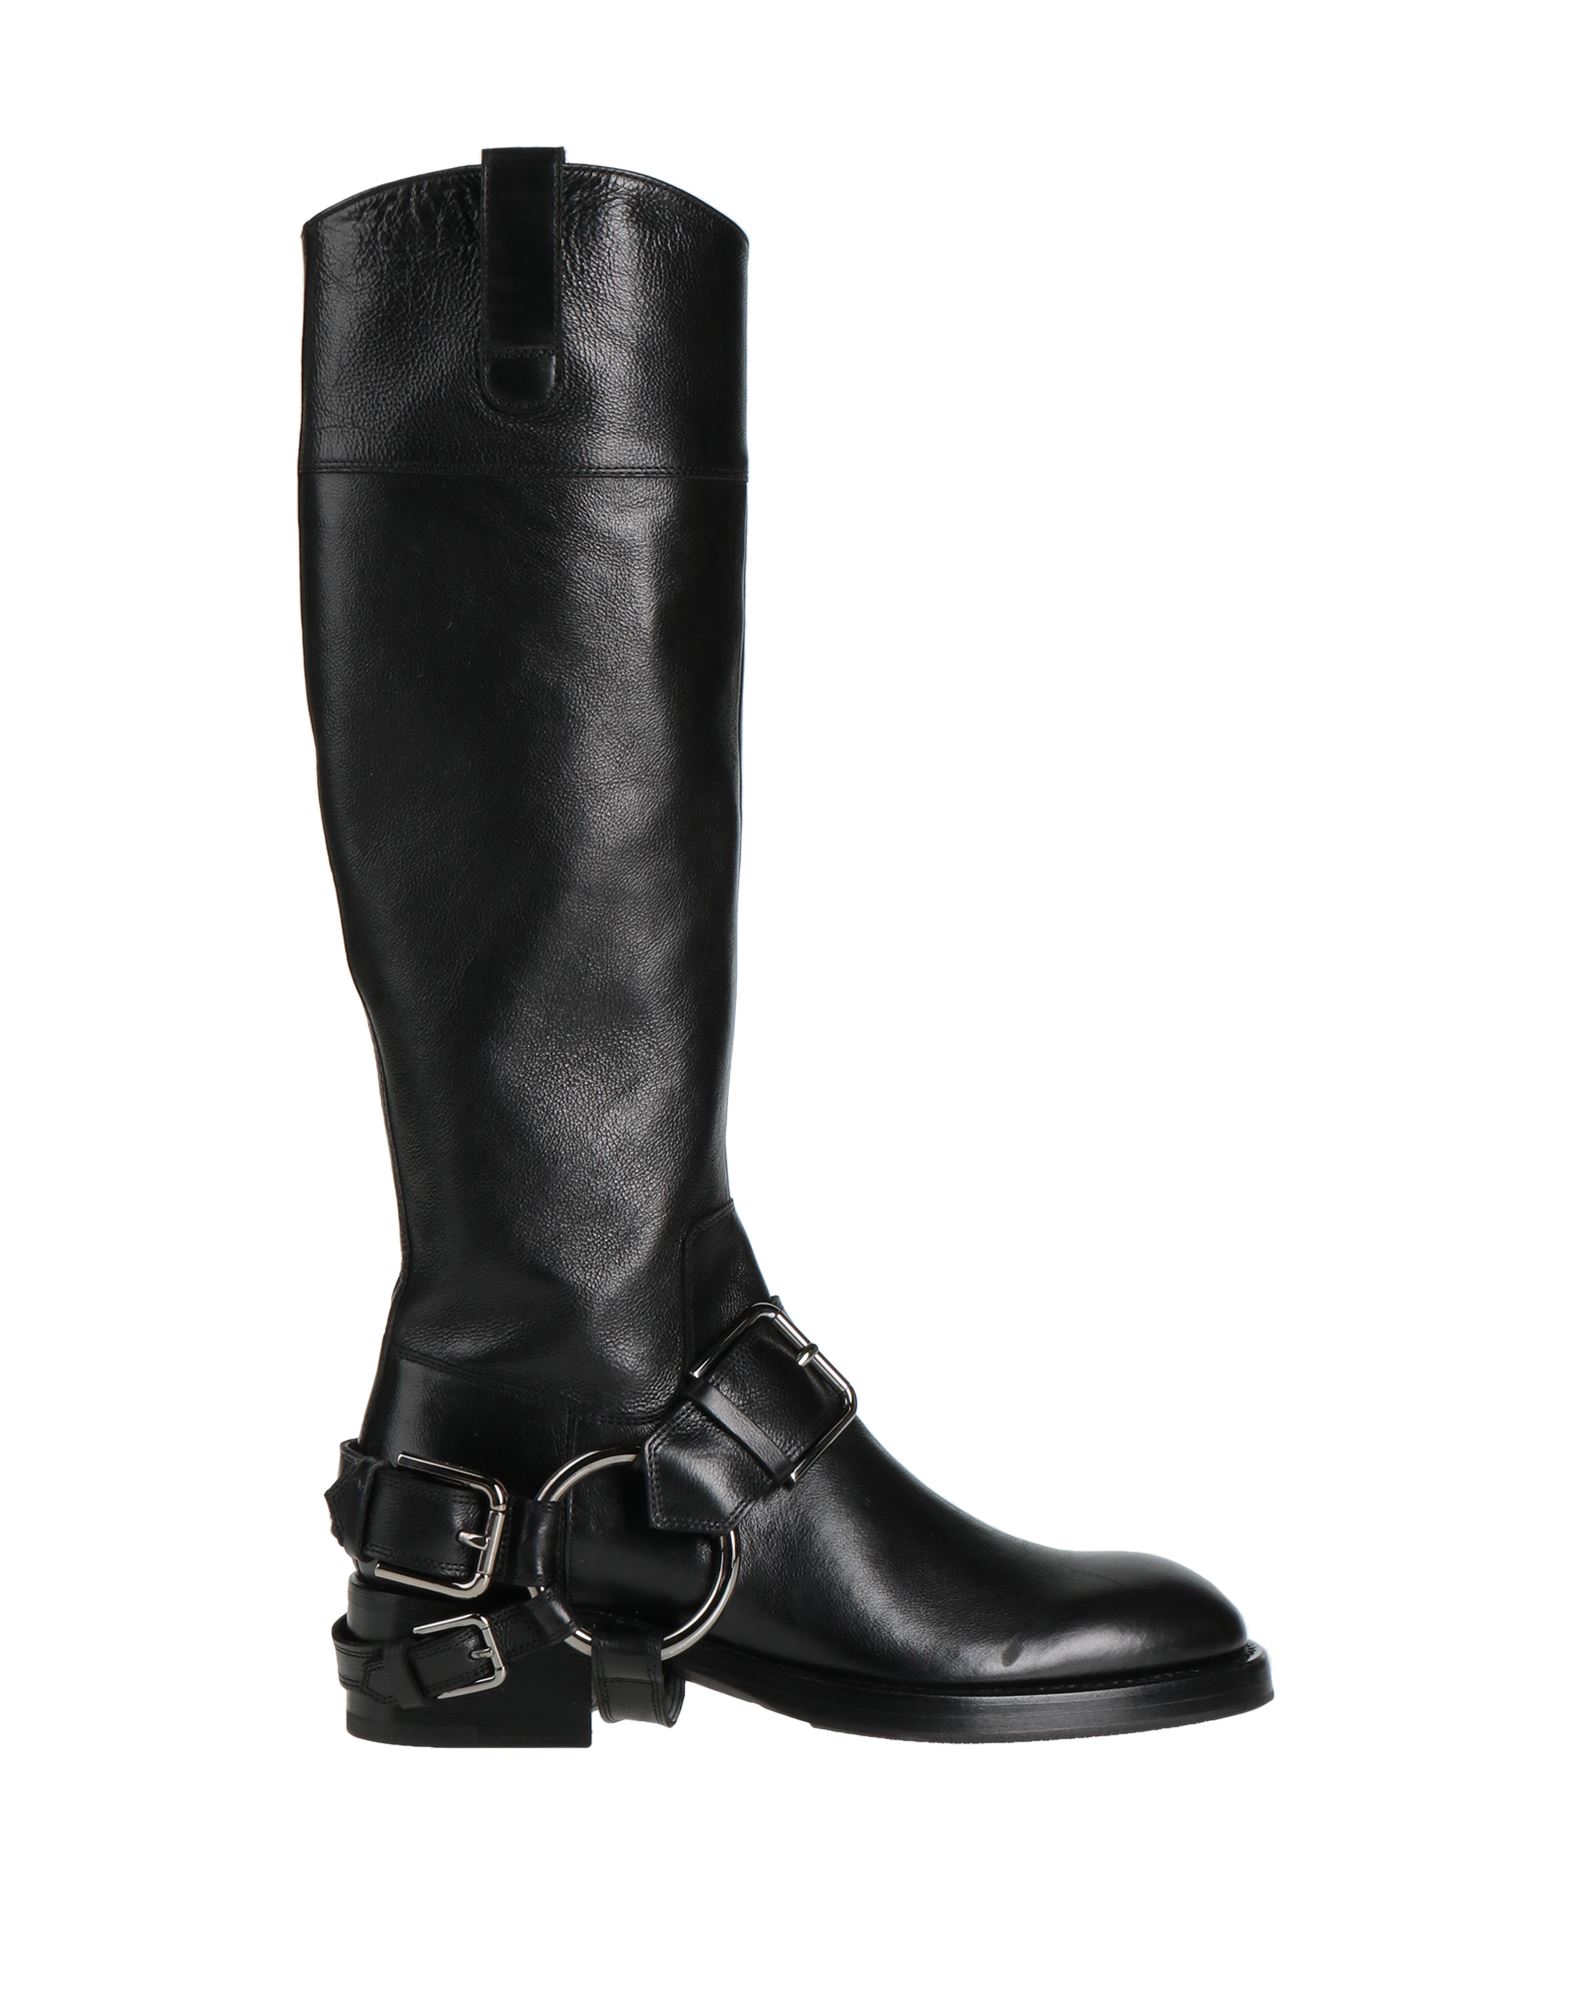 Dolce & Gabbana Woman Boot Black Size 9.5 Calfskin